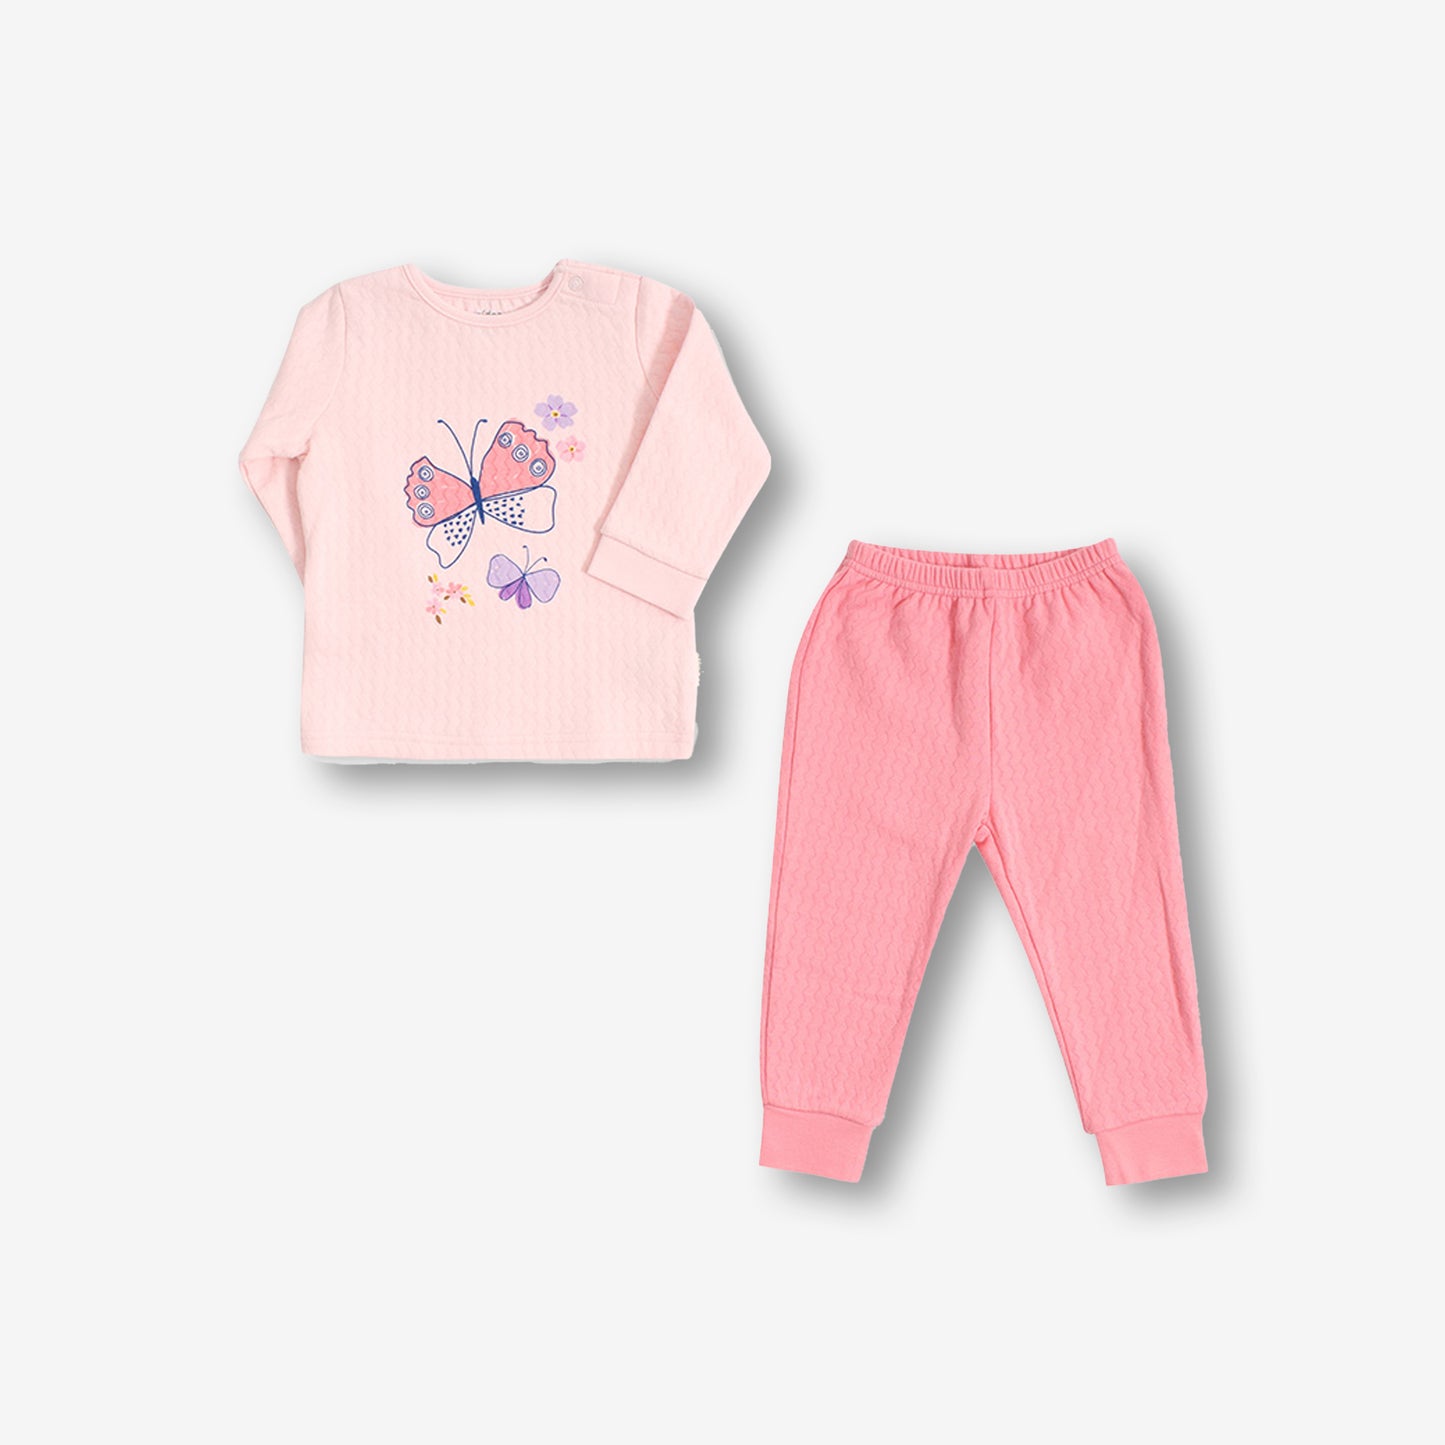 夾絲棉睡衣套裝-淡粉紅色蝴蝶圖案+粉紅色長褲